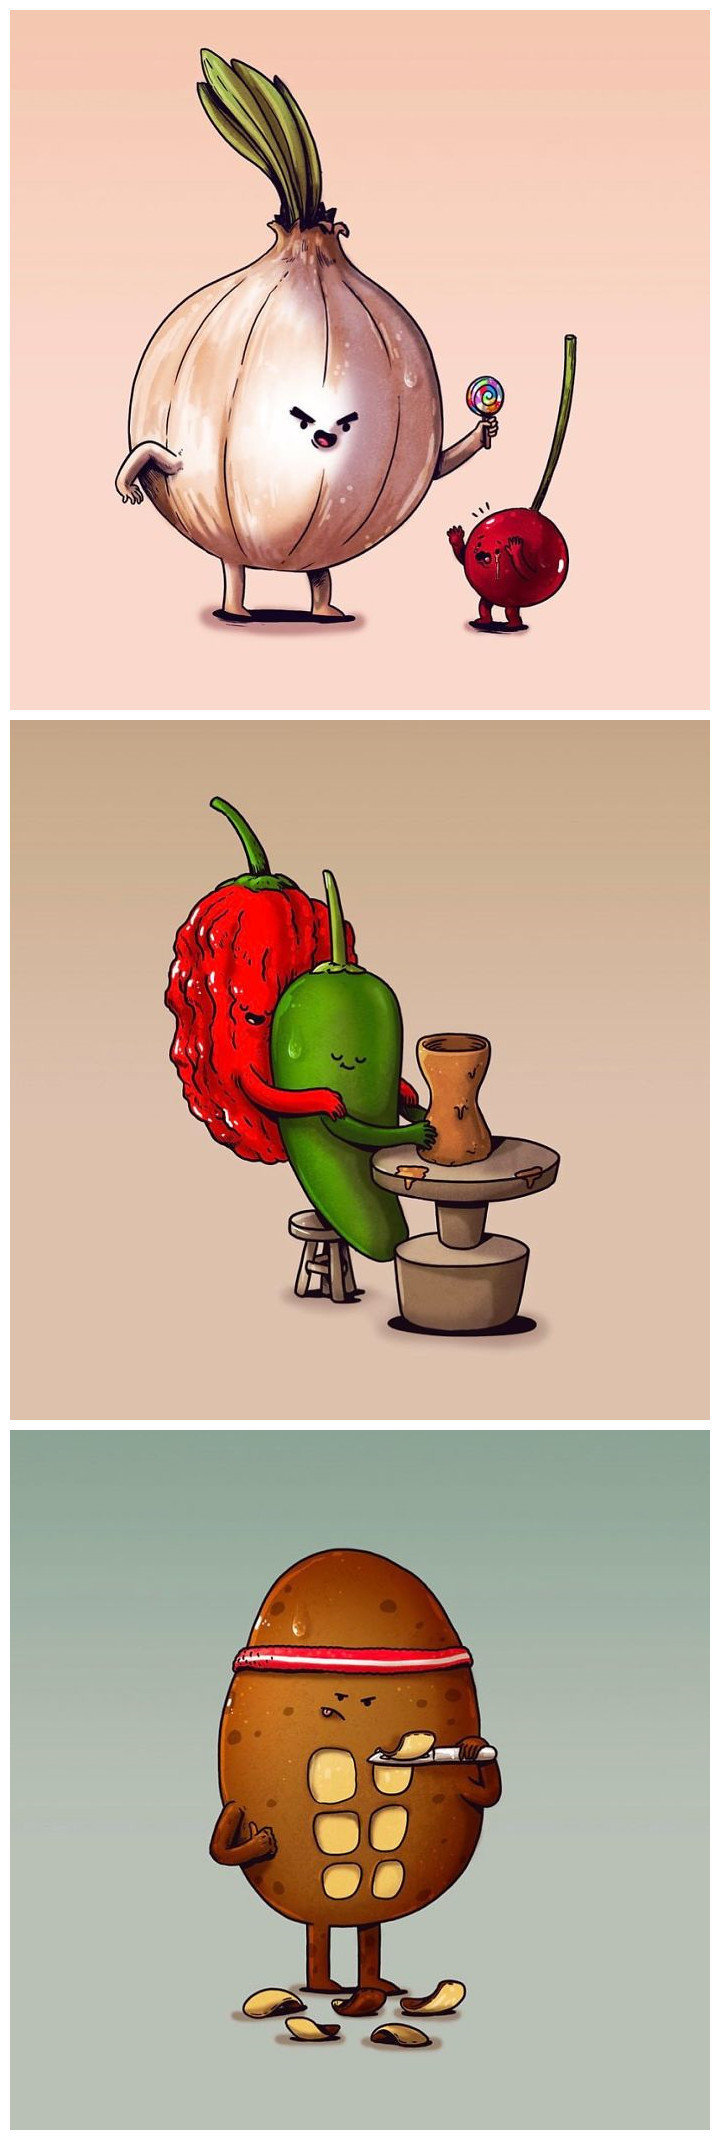 一组趣图,拟人化的水果蔬菜,看看逗笑你了没?